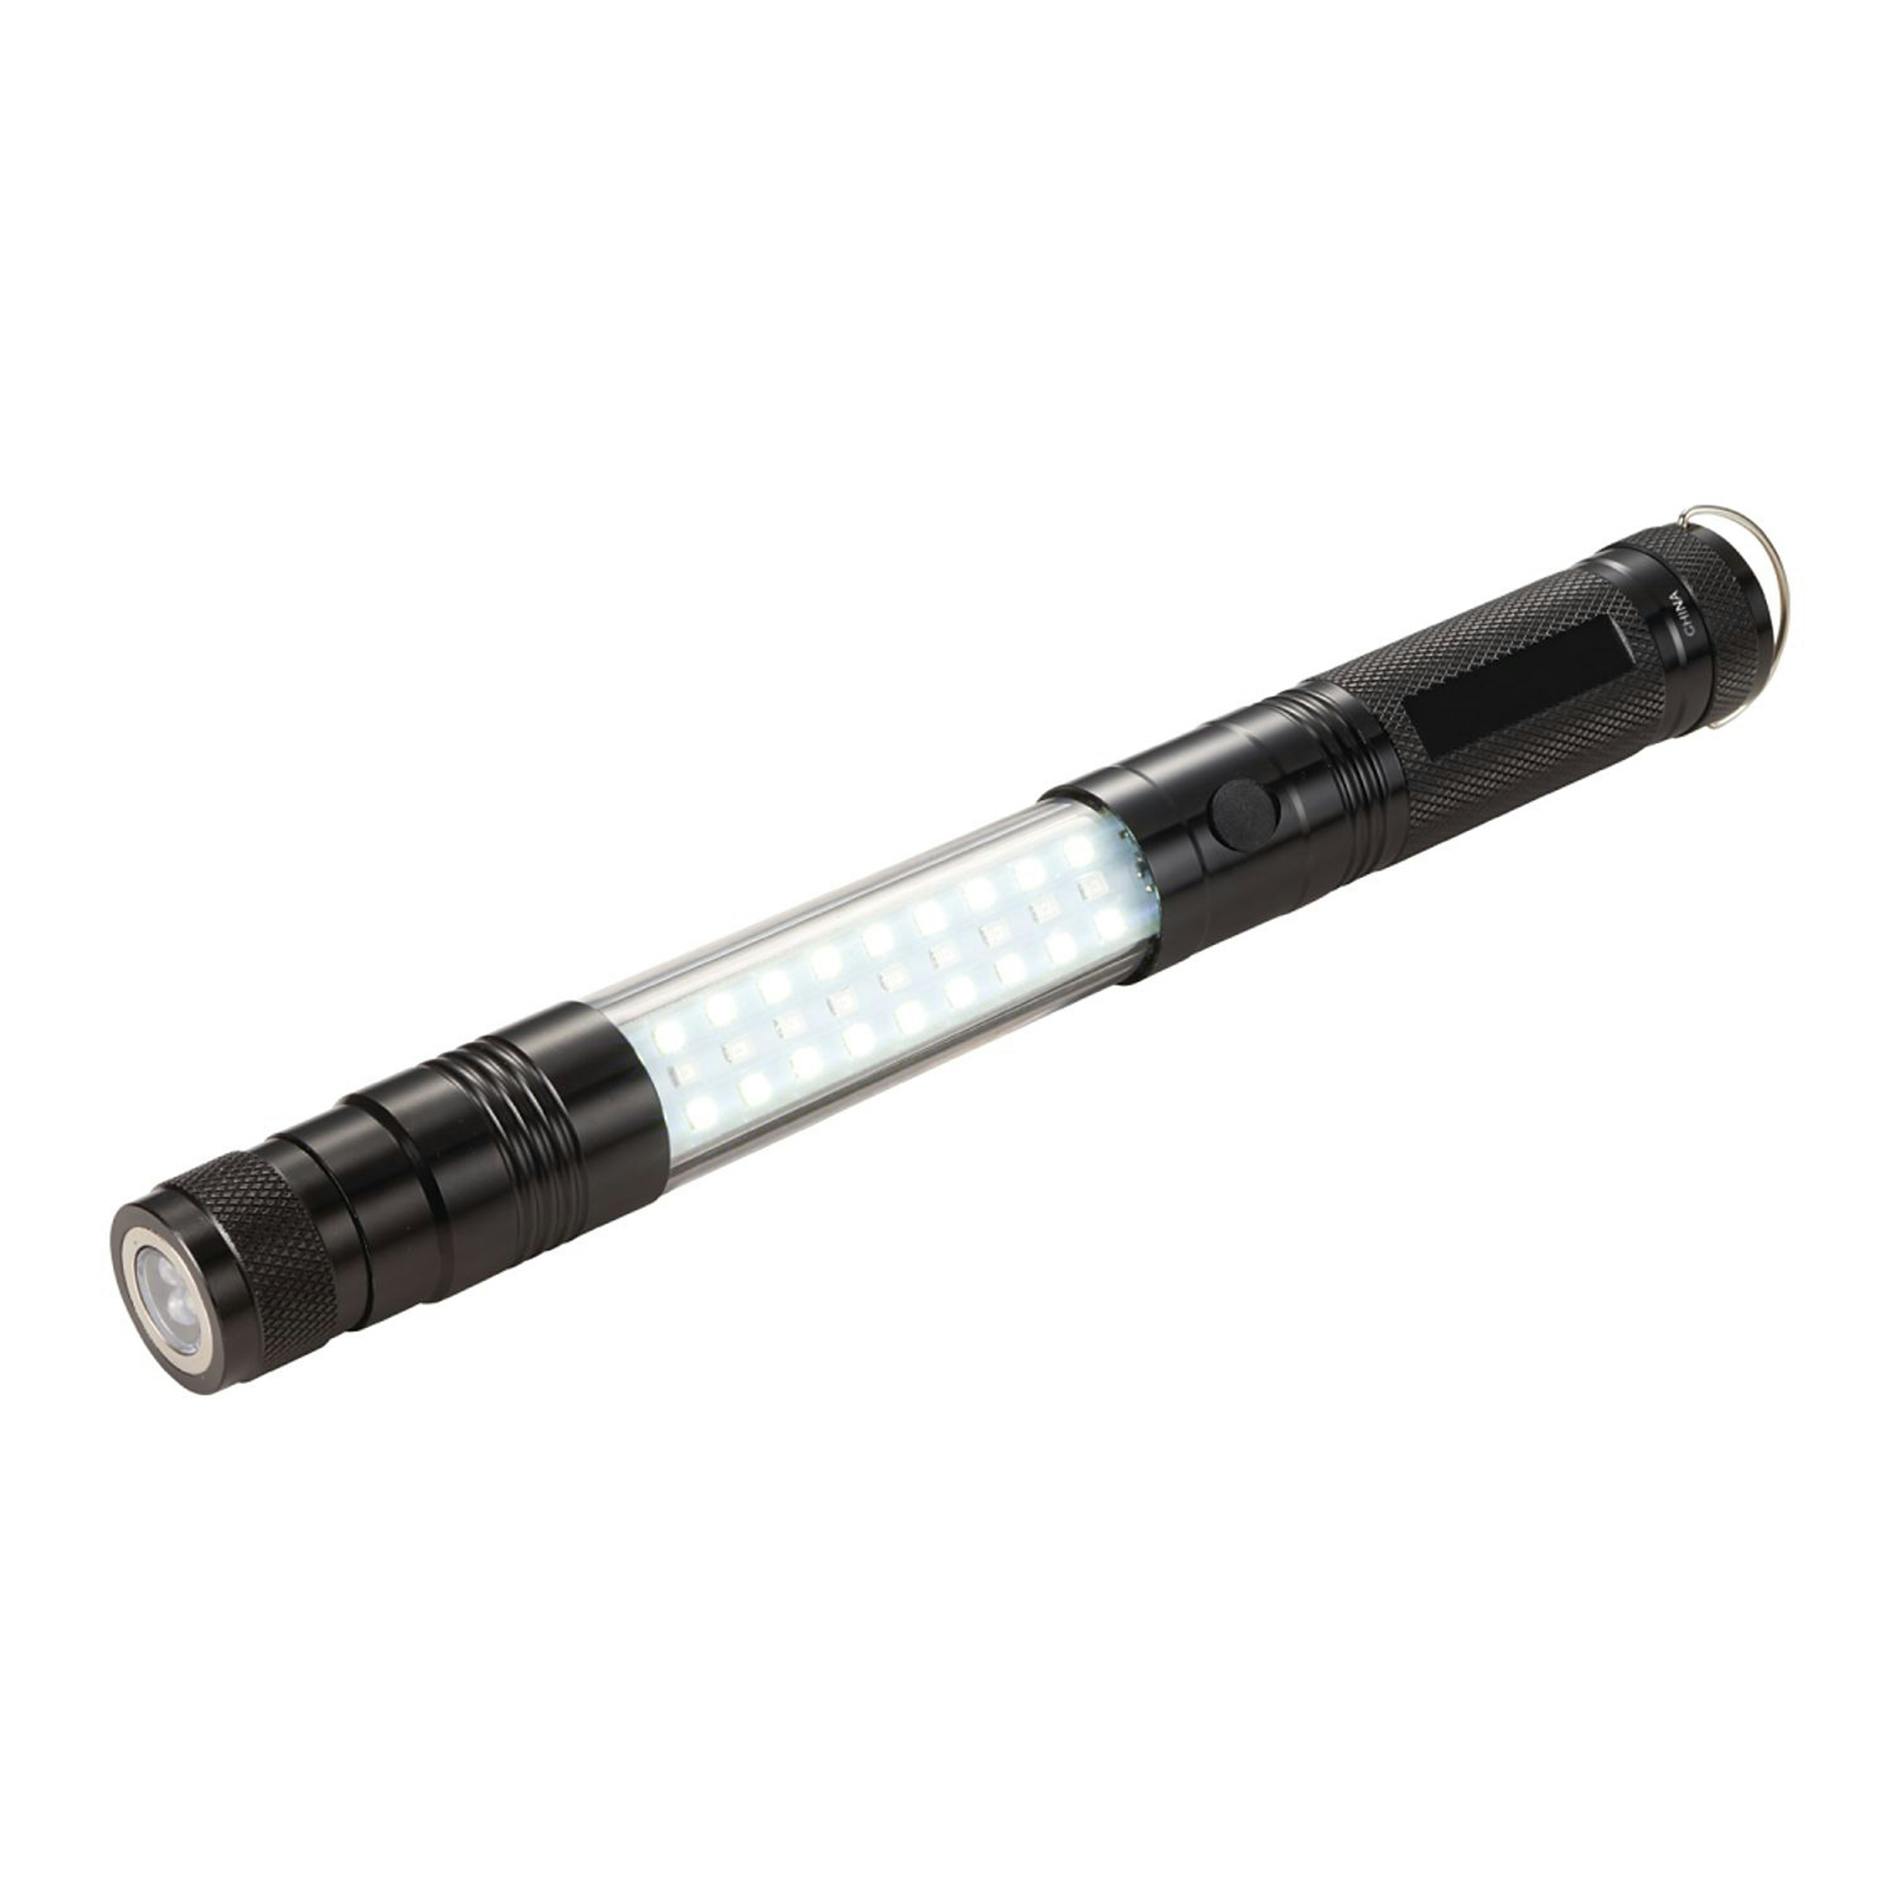 Telescopic Magnetic COB LED Flashlight w/Sidelight - additional Image 2